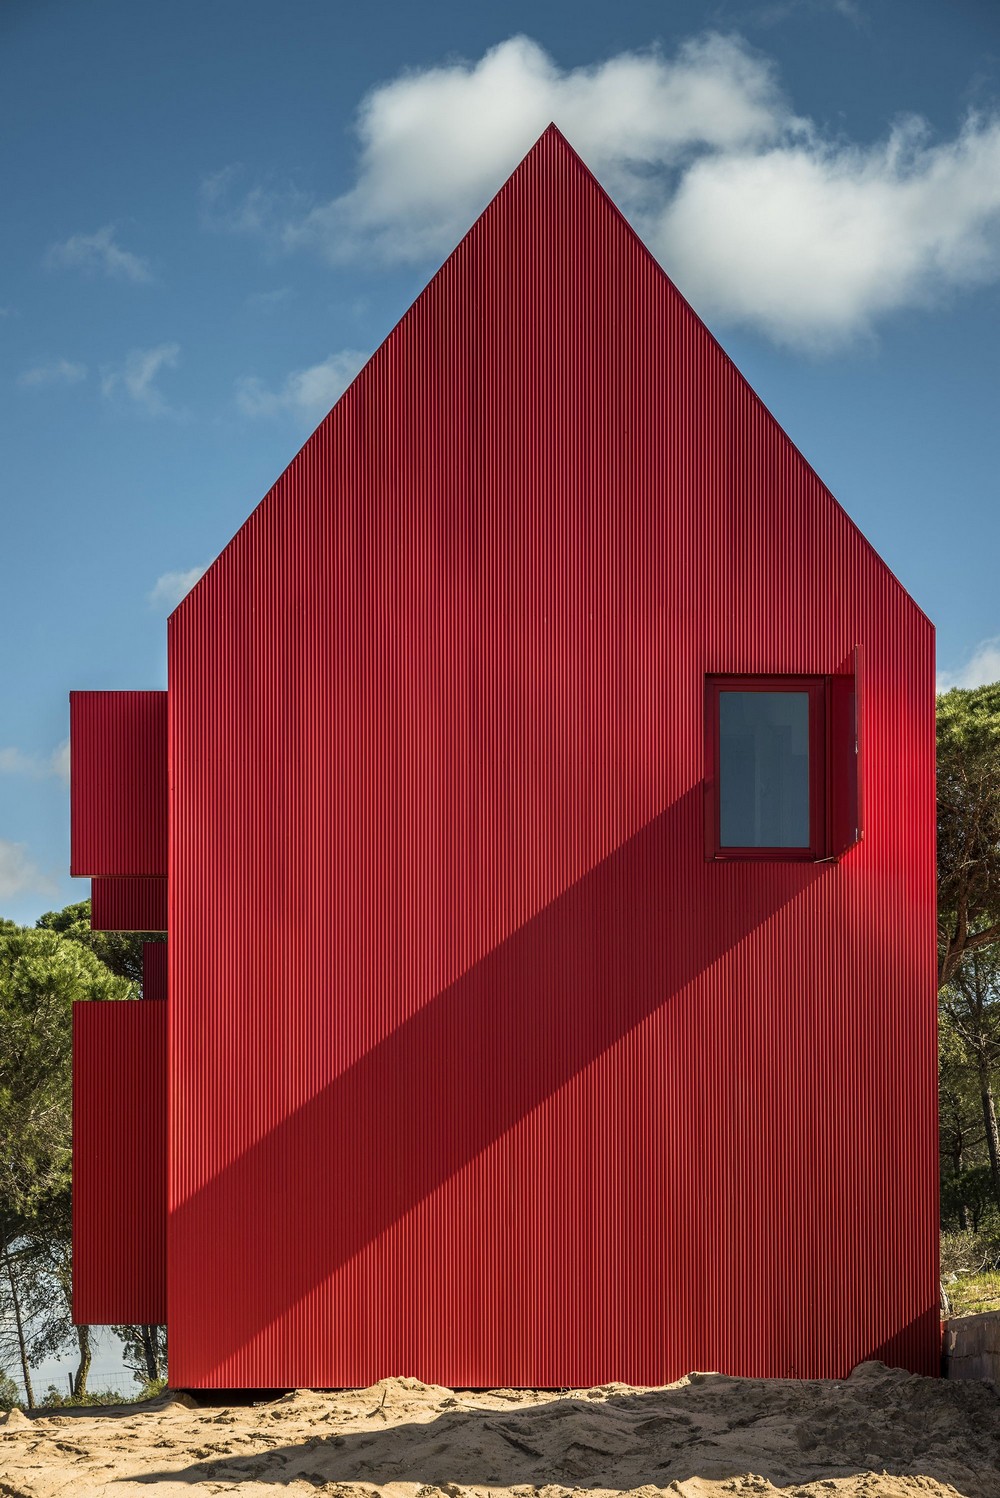 Необычный красный коттедж в Португалии